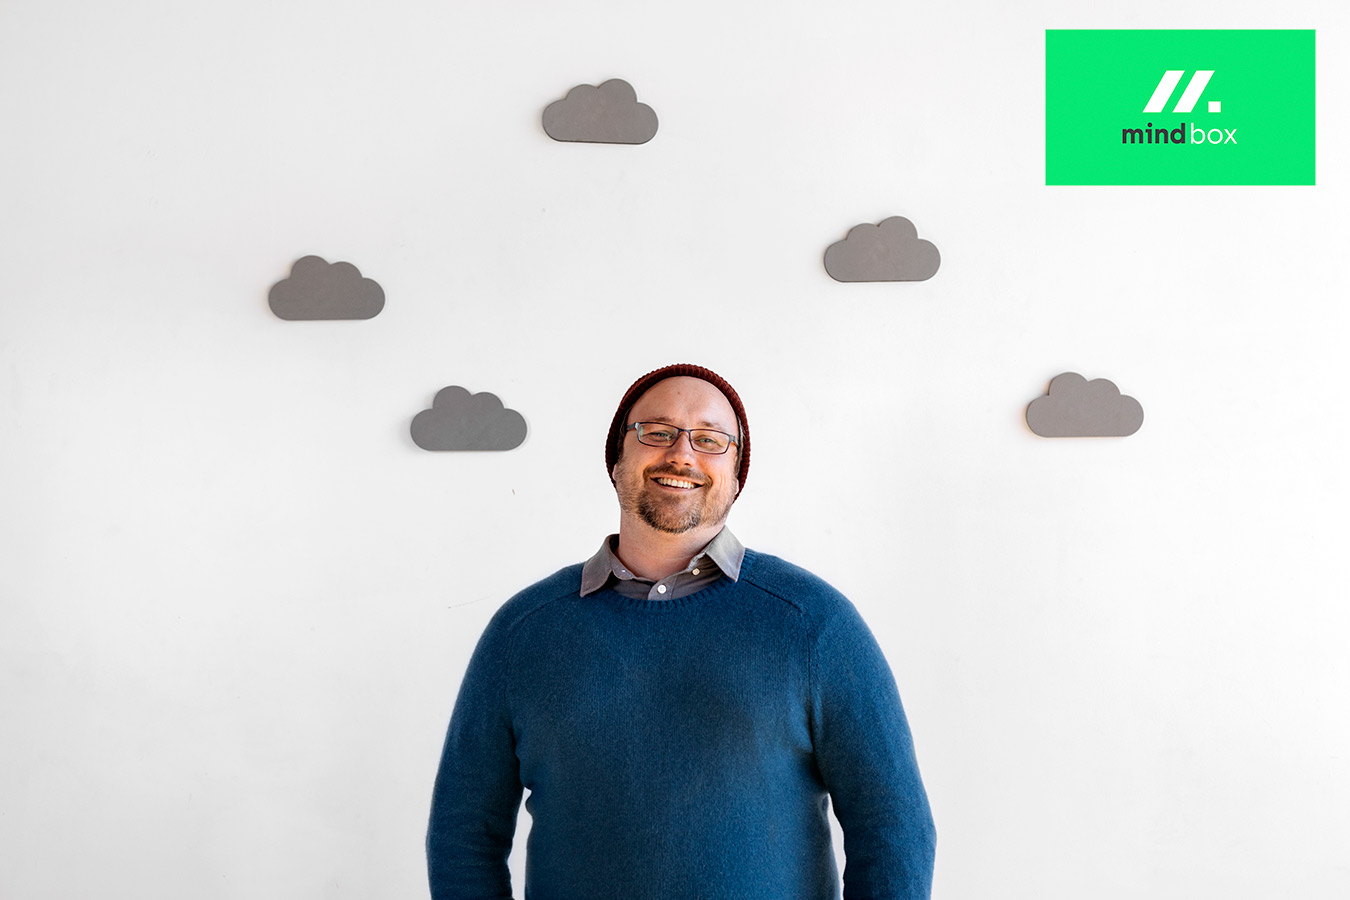 cloud native ajutăm companii ca a voastră să reușească în era cloud